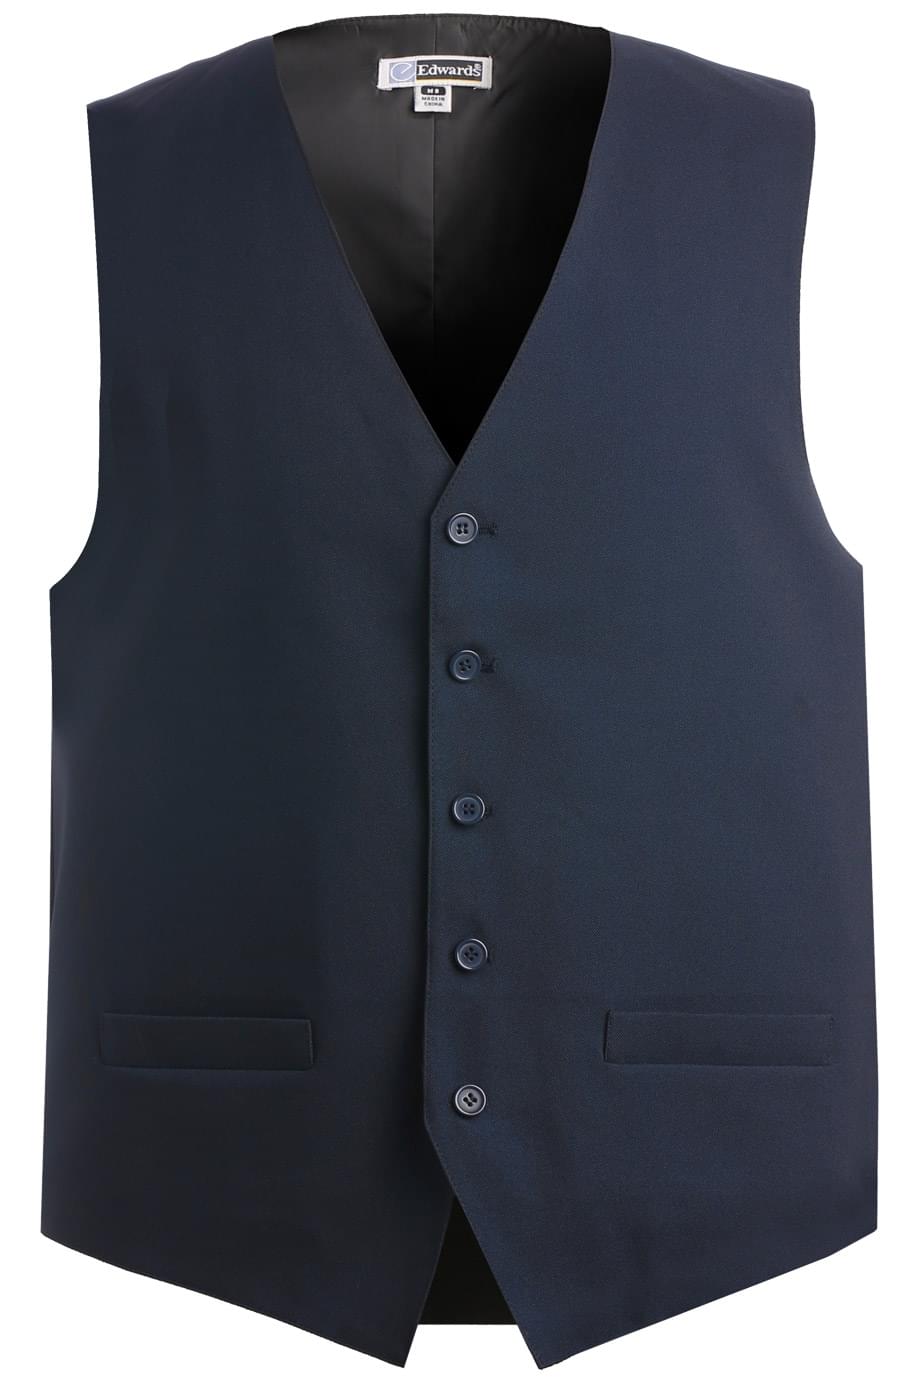 Essentials Gilet Polaire Entièrement Zippé Outerwear-Vests Homme